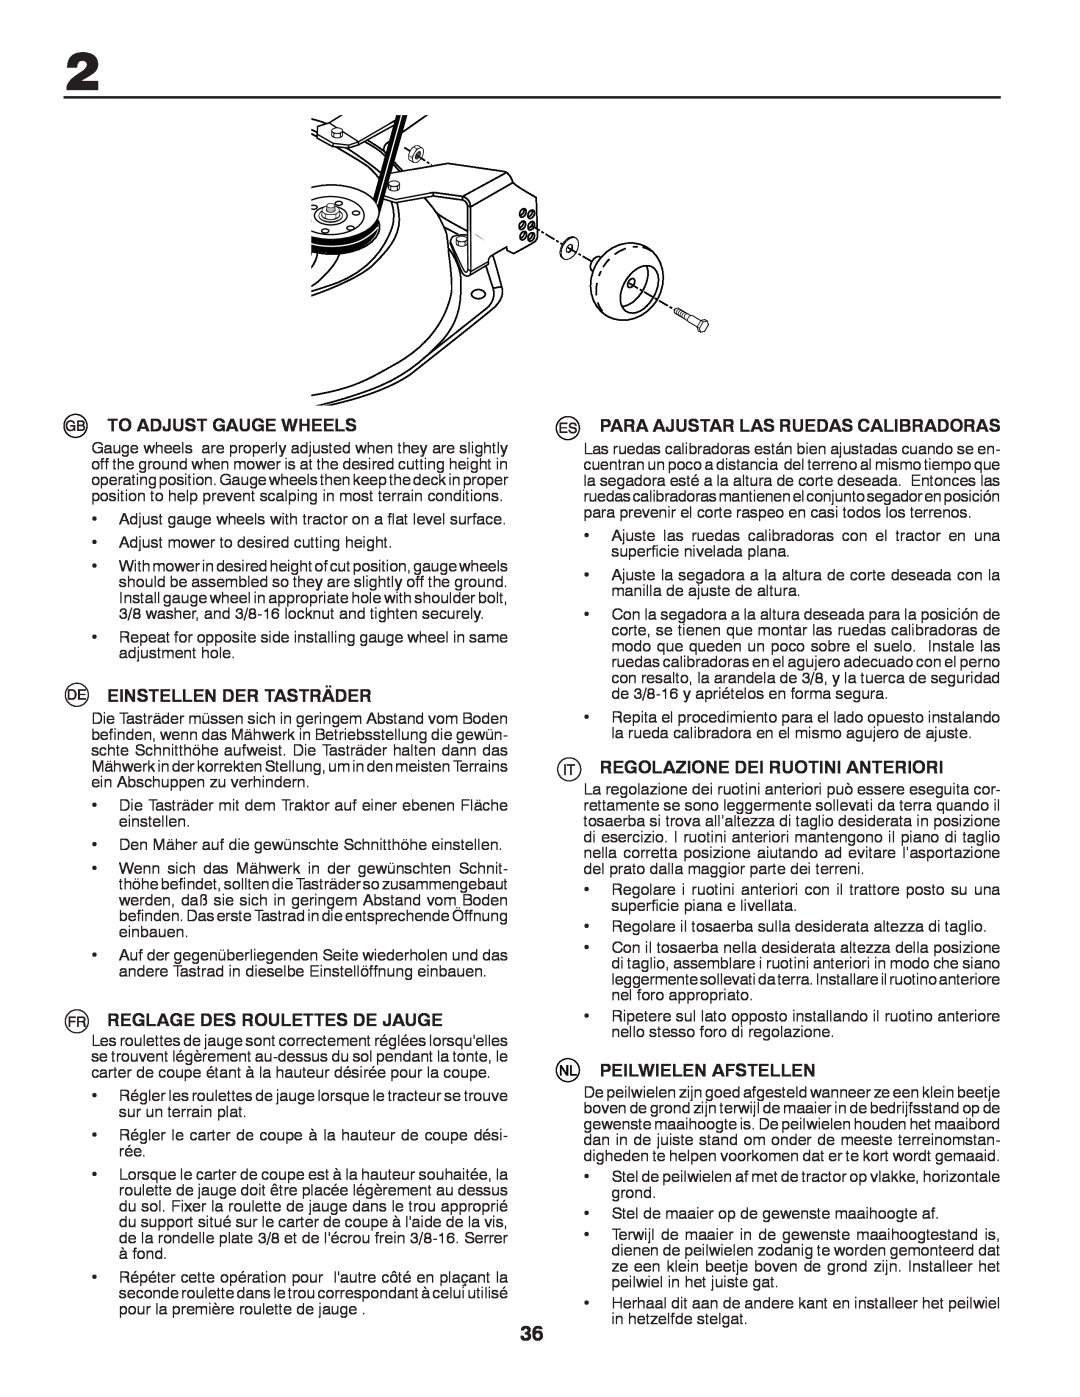 Husqvarna CTH140TWIN instruction manual To Adjust Gauge Wheels, Einstellen Der Tasträder, Reglage Des Roulettes De Jauge 